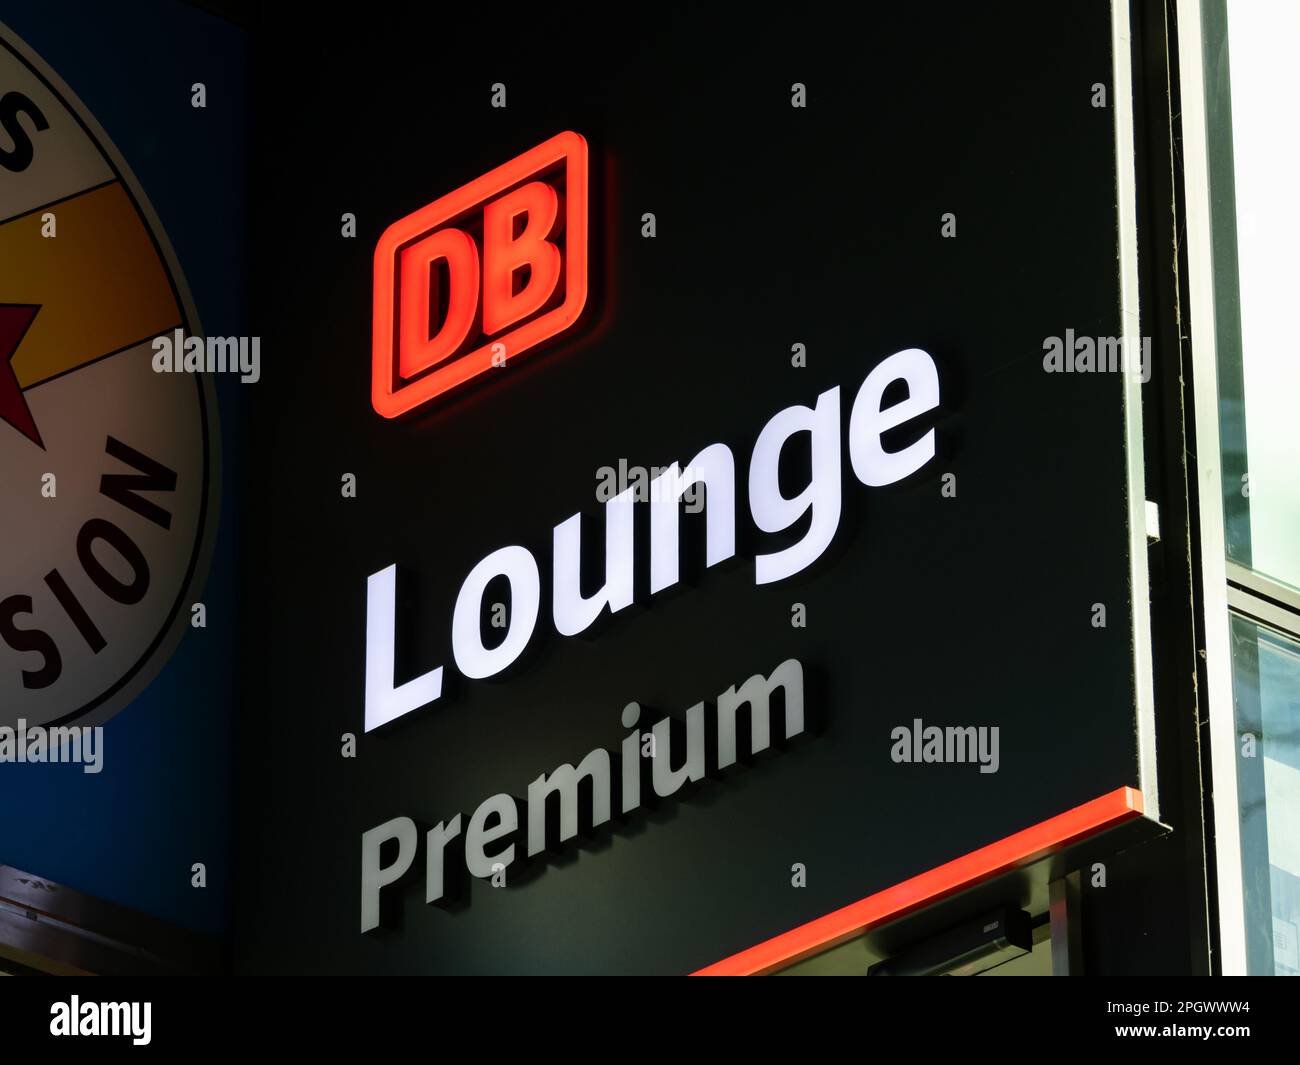 DB Lounge Premium der Gesellschaft Deutsche Bahn. Komfortable Wartebereiche für Reisende mit Vorteilen der 1. Klasse. Das Logo ist beleuchtet. Stockfoto